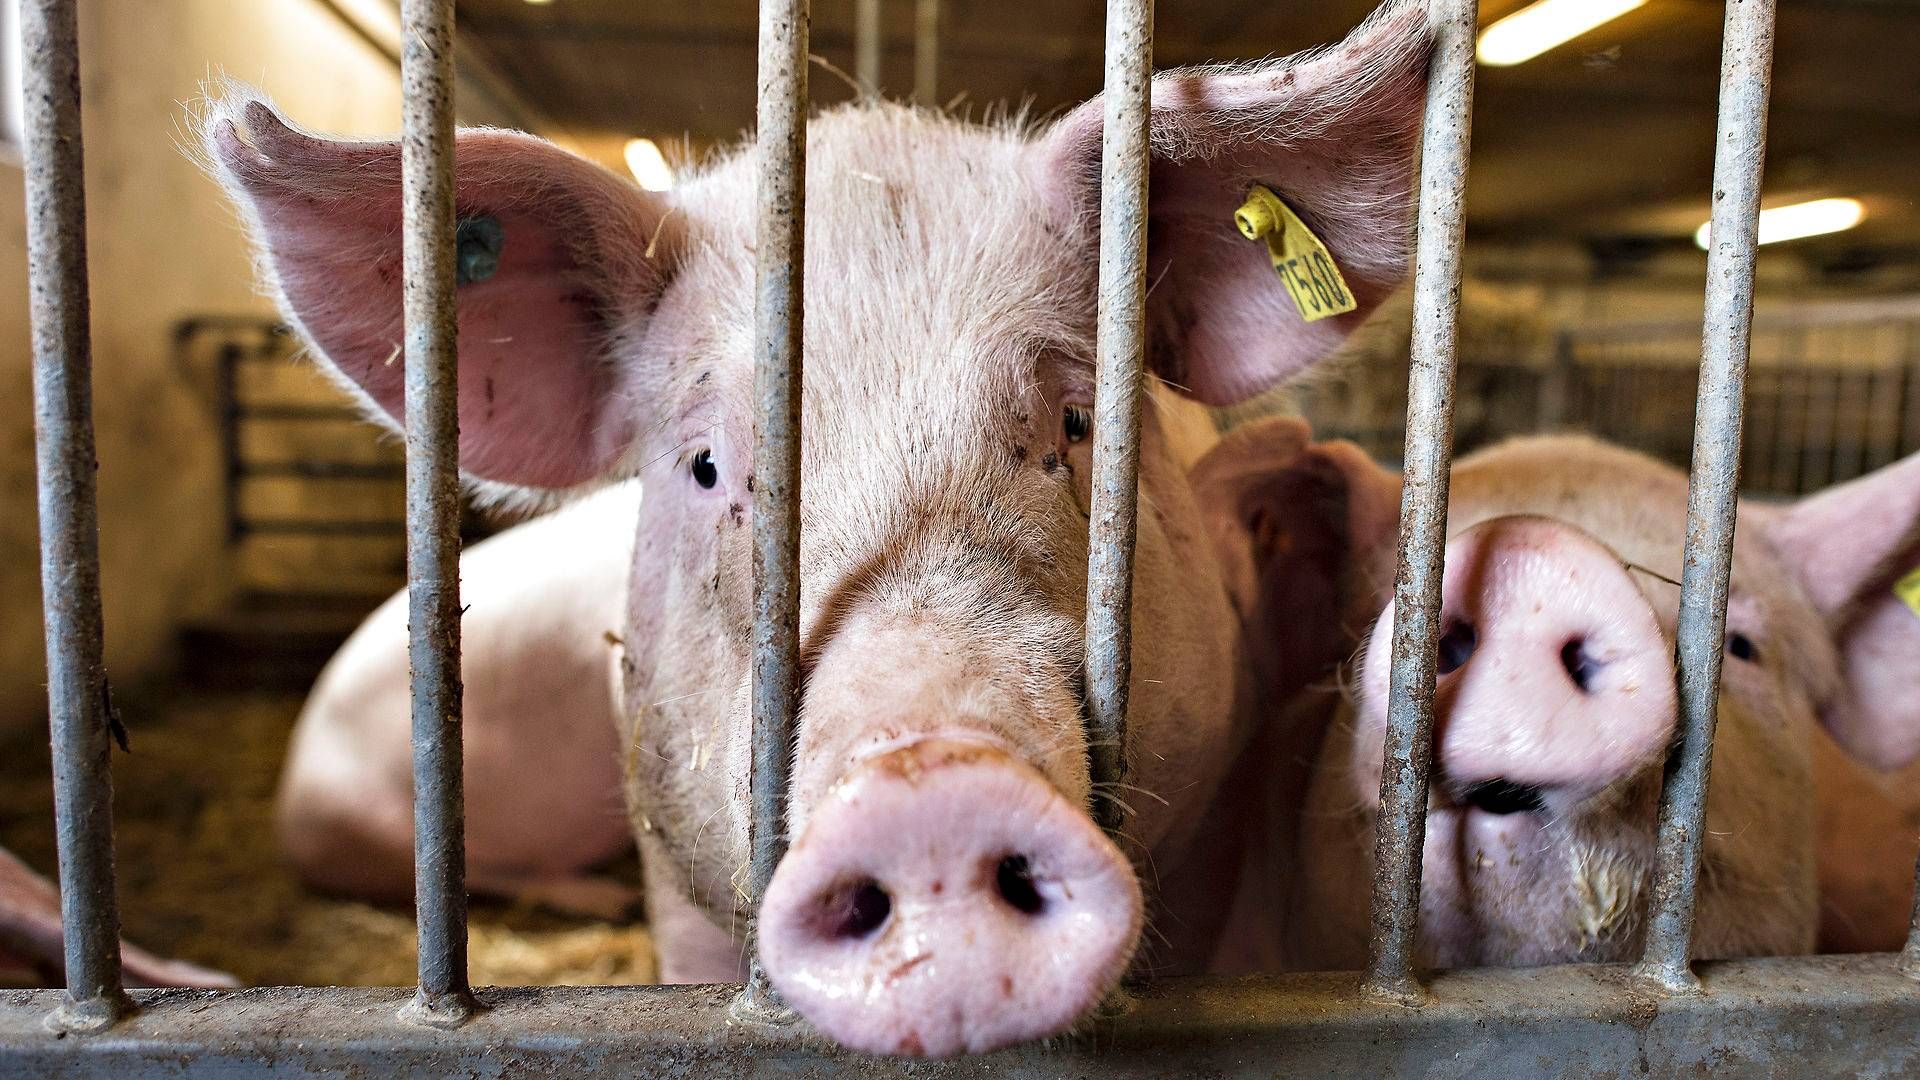 Det er især svinebønderne, som har fået det bedre økonomisk over det seneste år. | Foto: Claus Fisker/Ritzau Scanpix